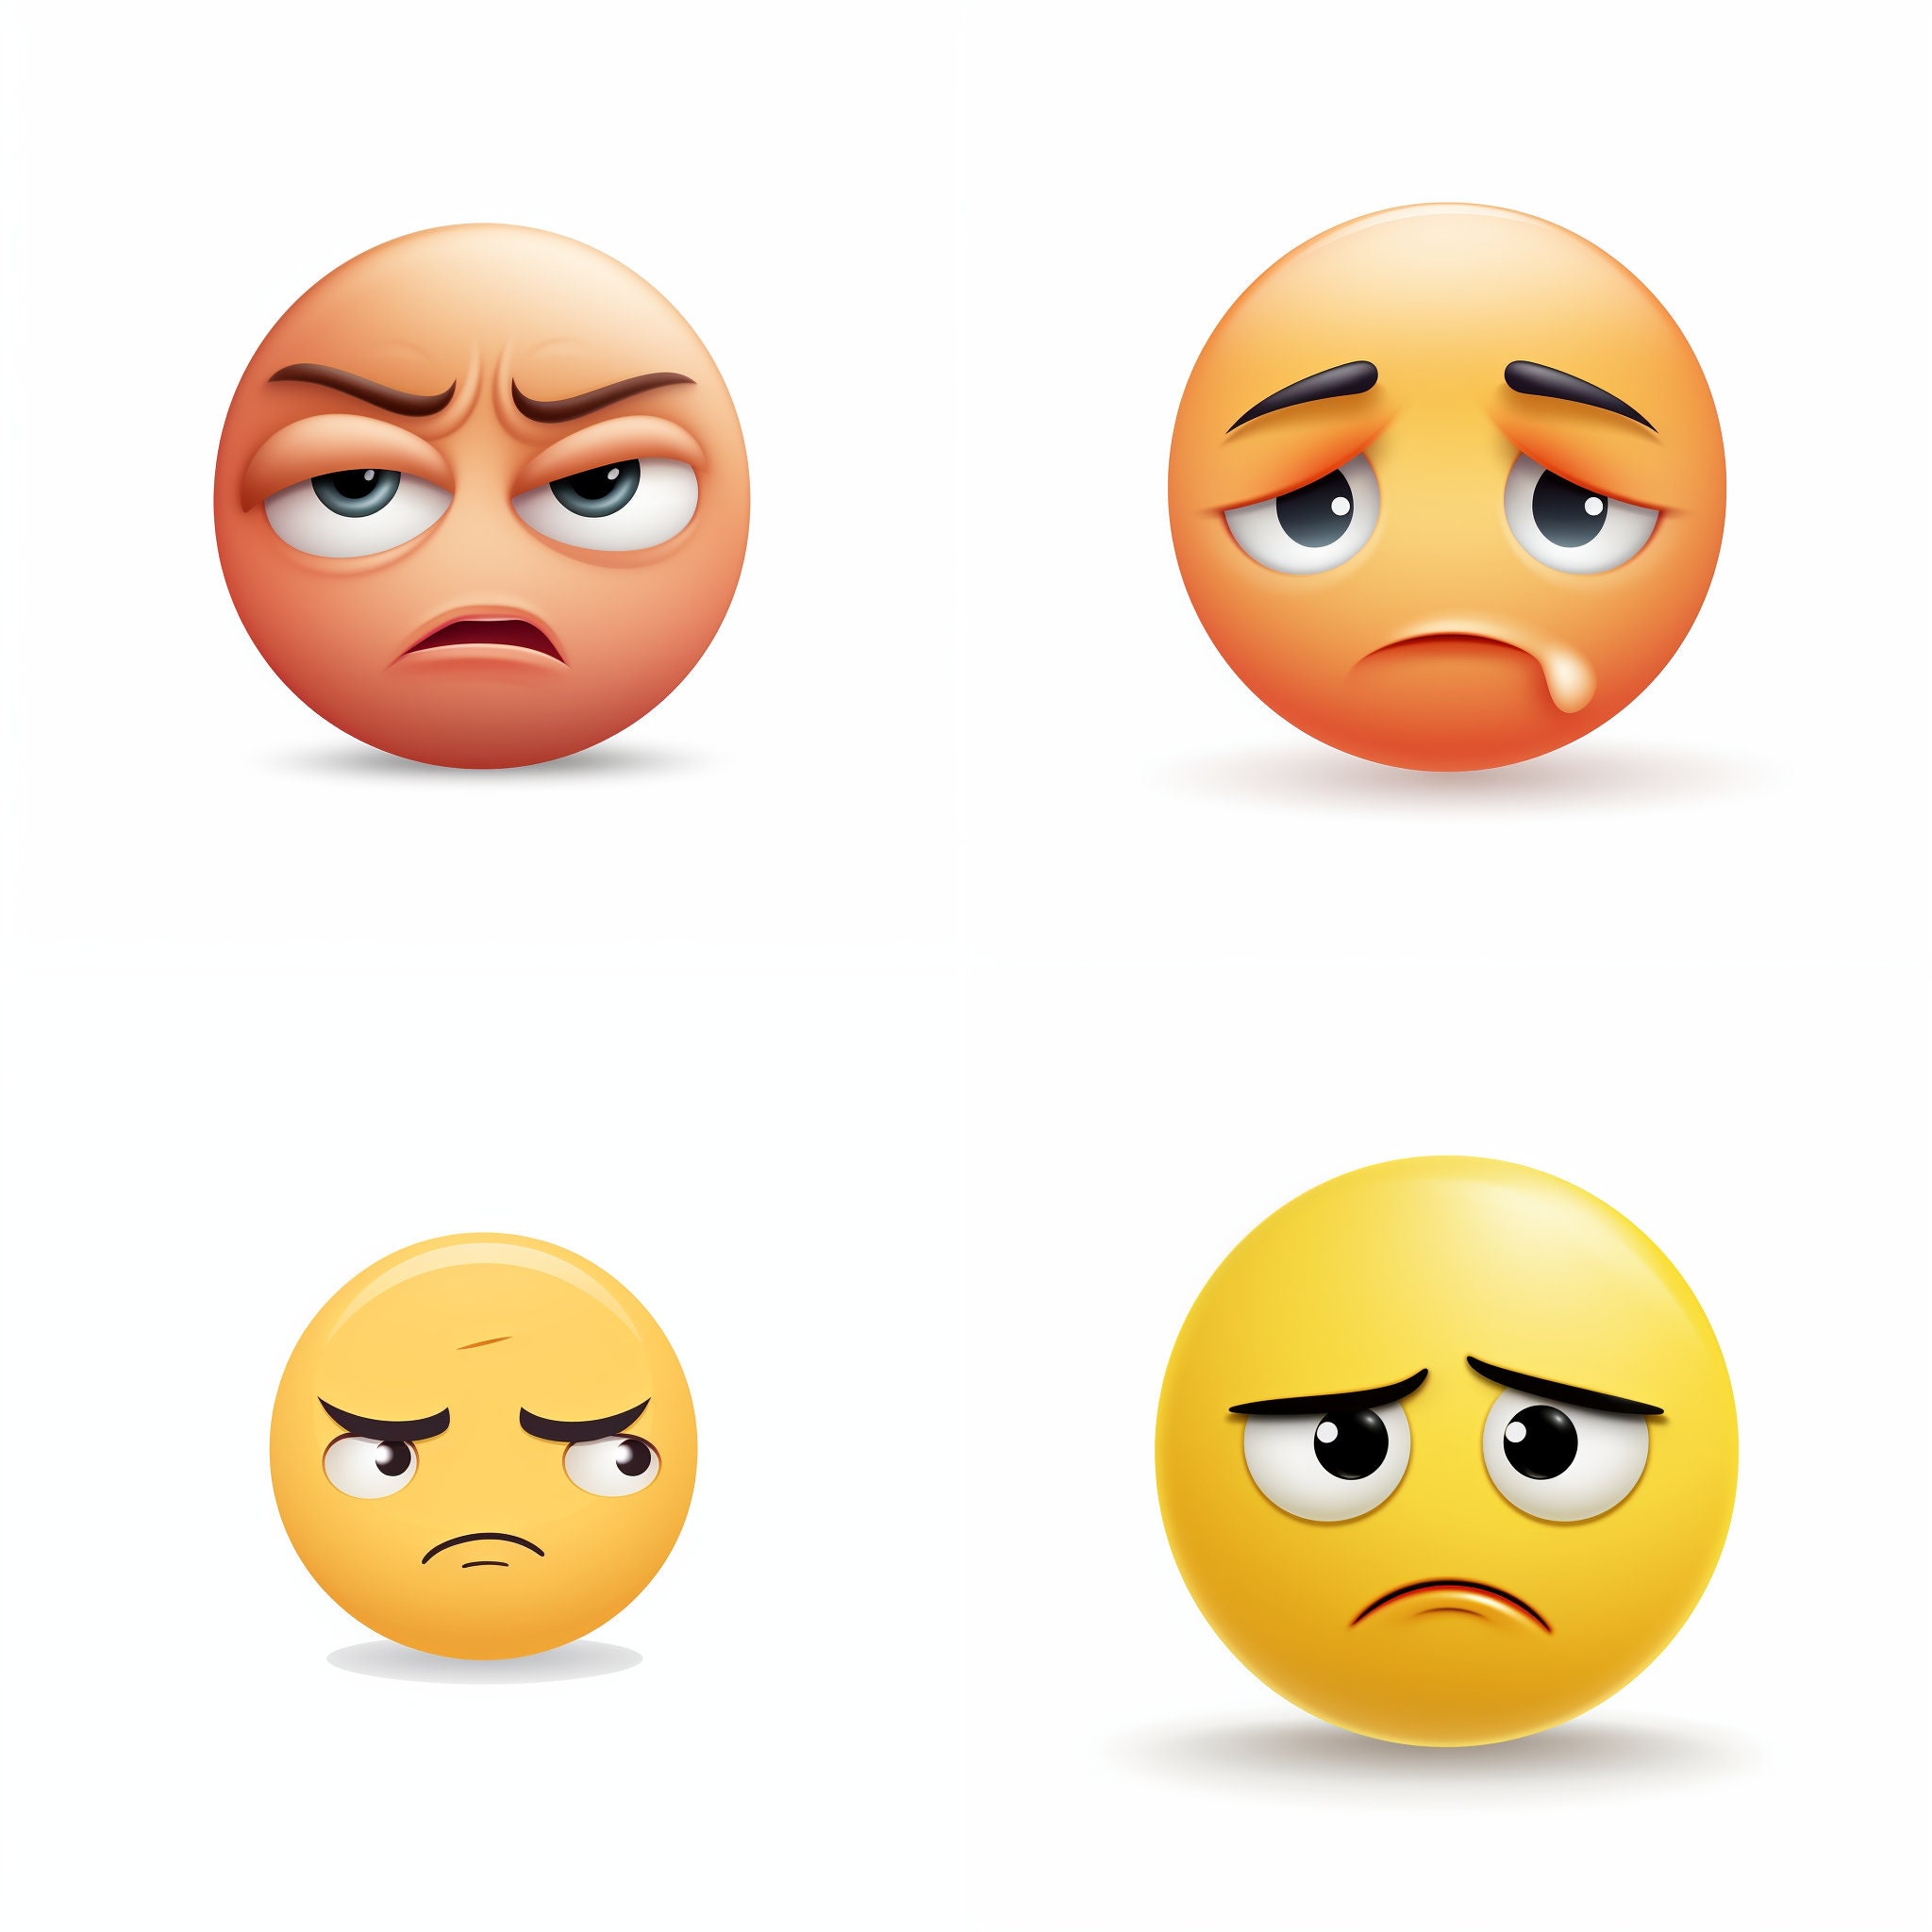 220 Best Cursed Emojis ideas  emoji meme, emoji art, emoji drawings